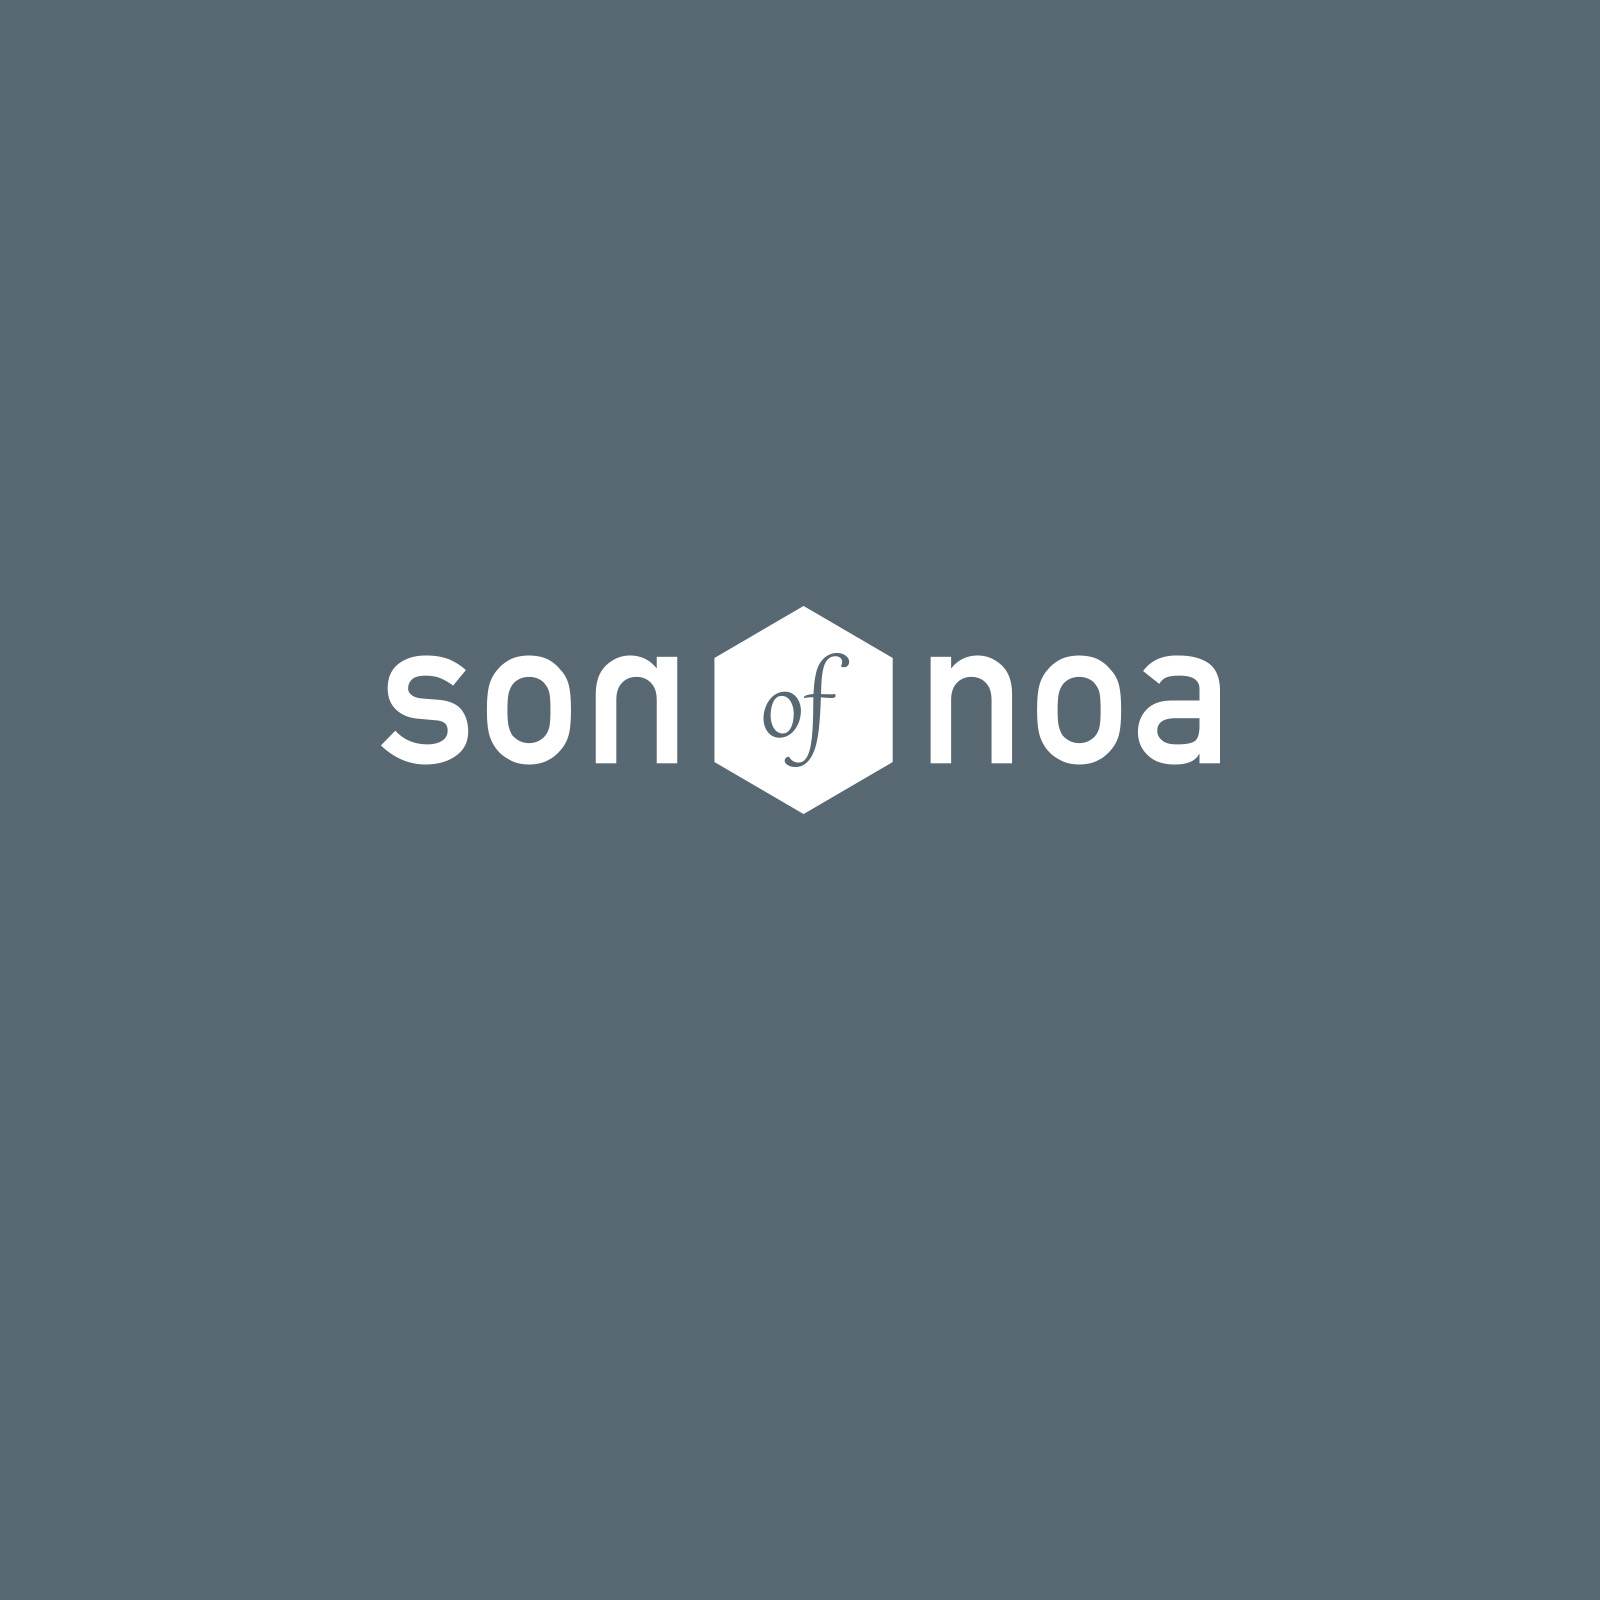 SON of NOA logo